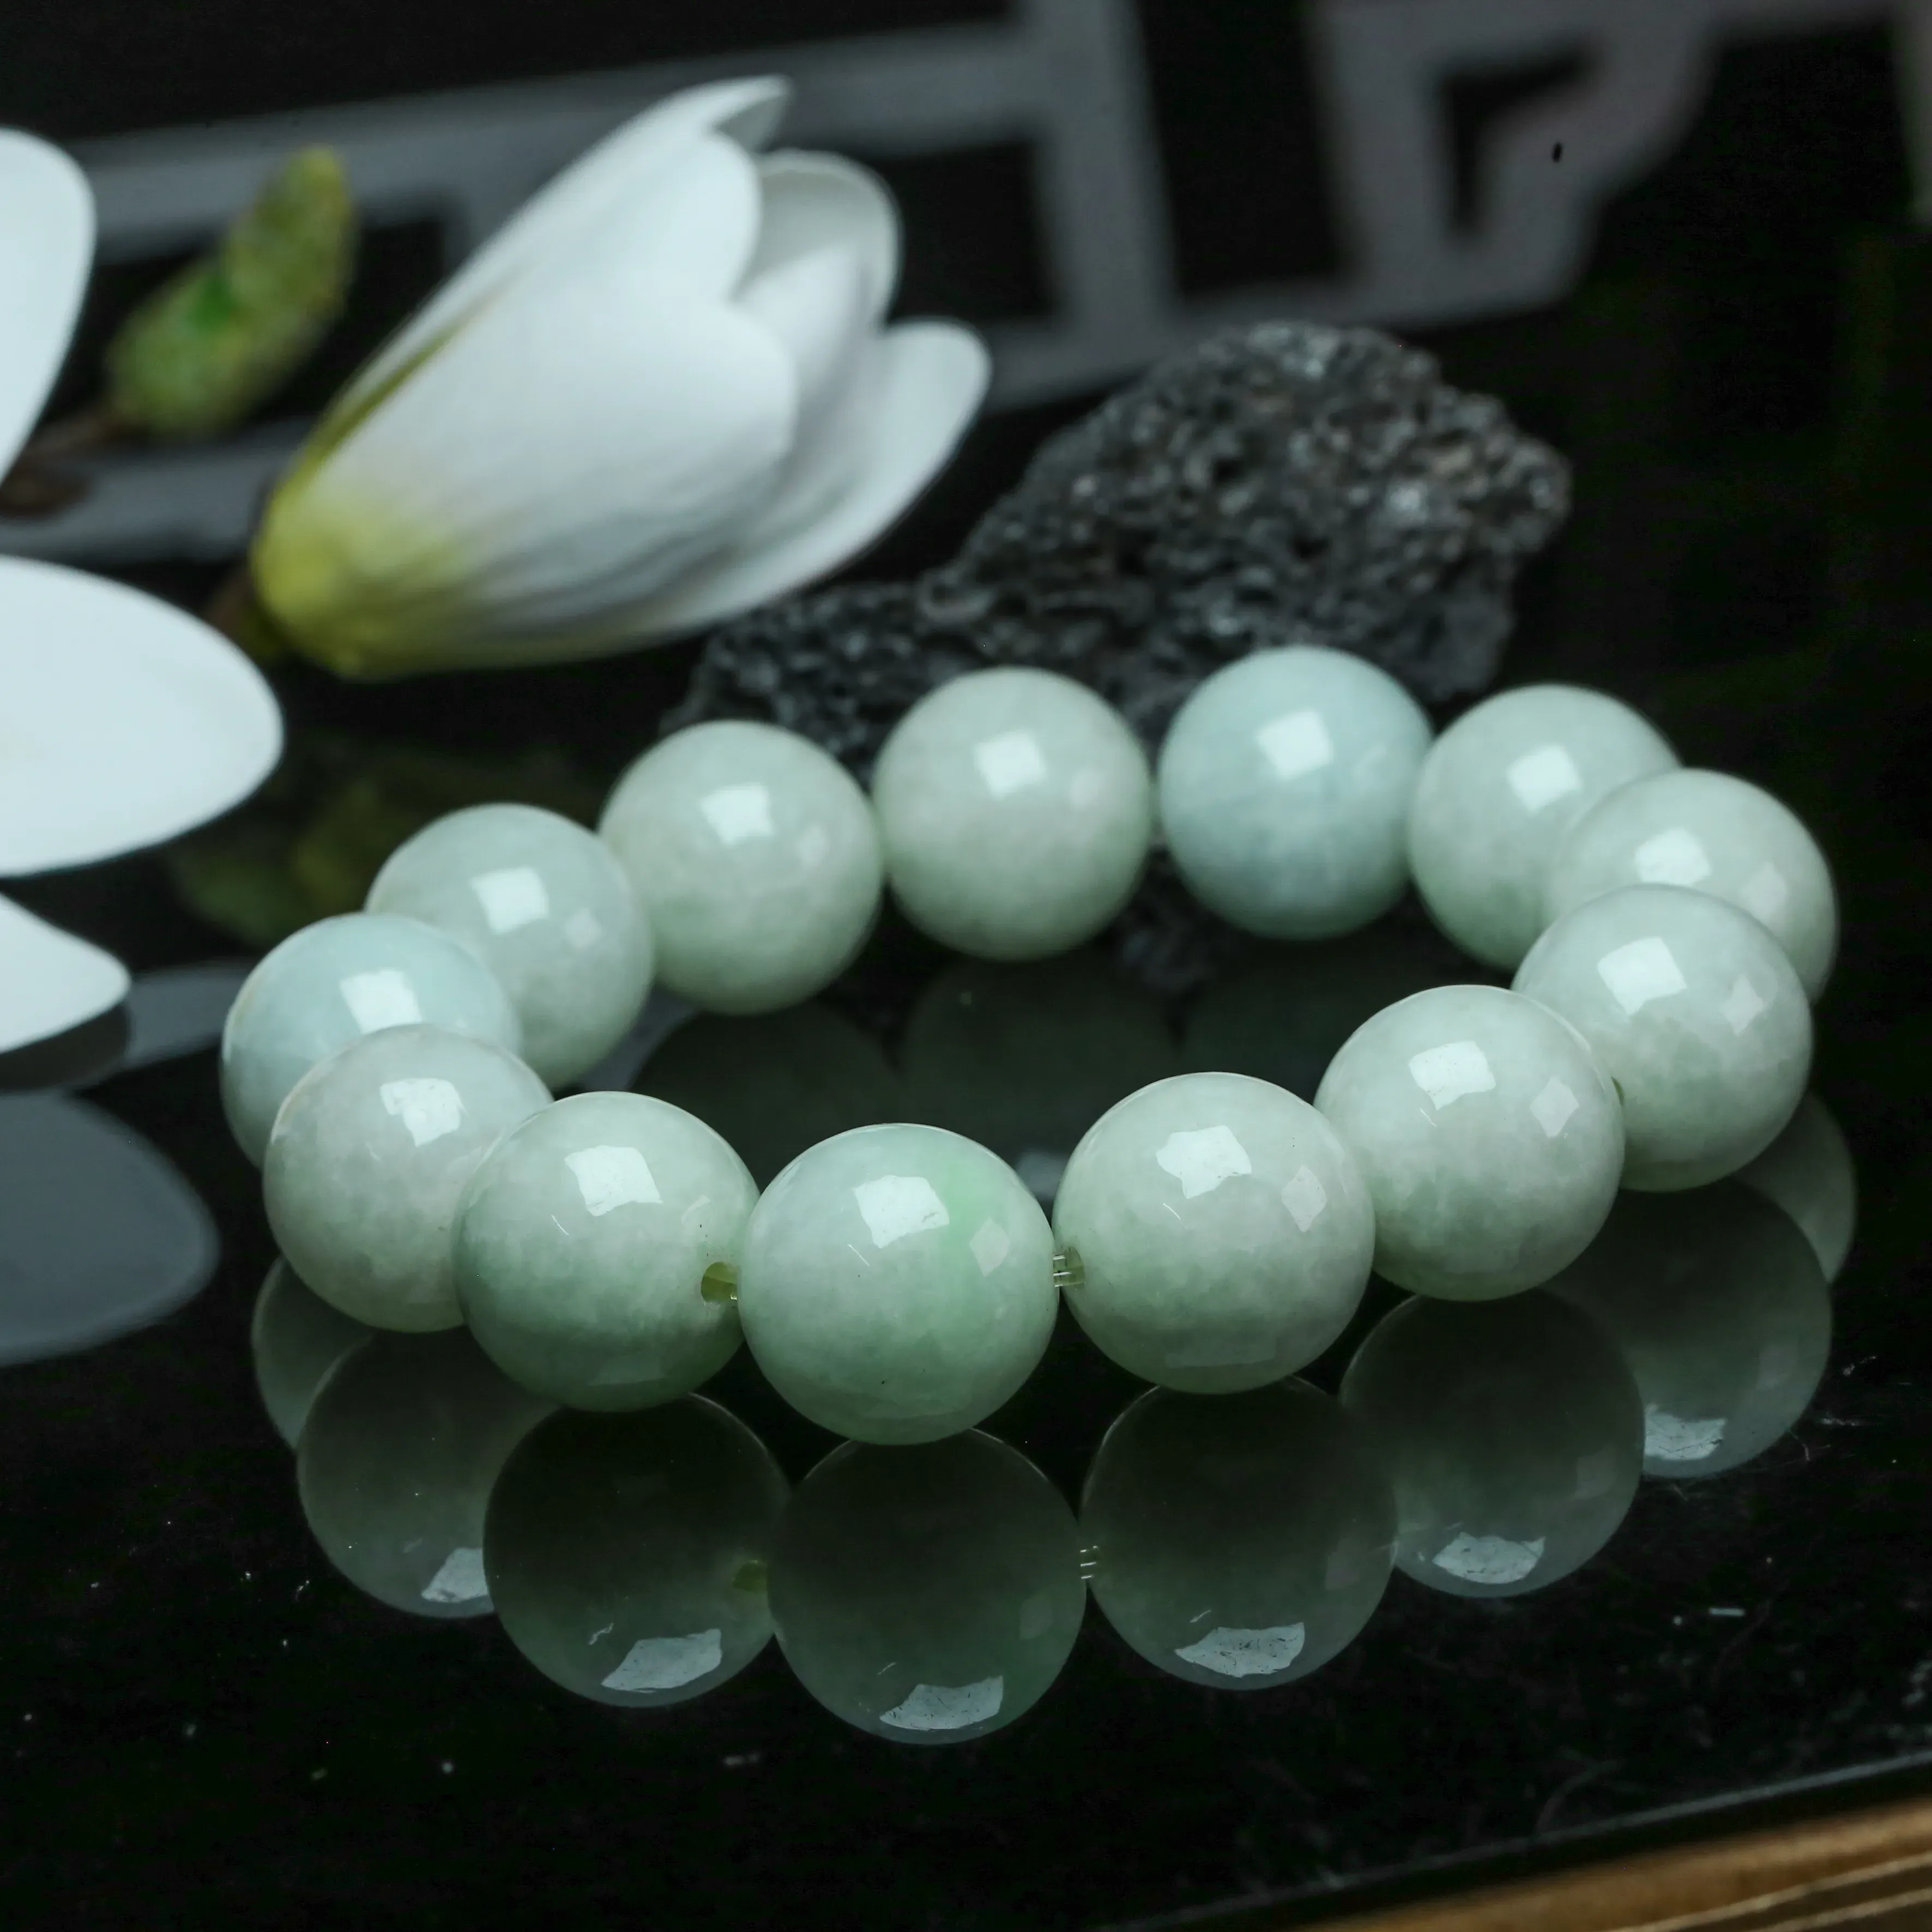 翡翠圆珠手串，共13颗珠子，取其中一颗珠尺寸大约16.8mm，饱满圆润，色泽清爽。上手佩戴高贵漂亮